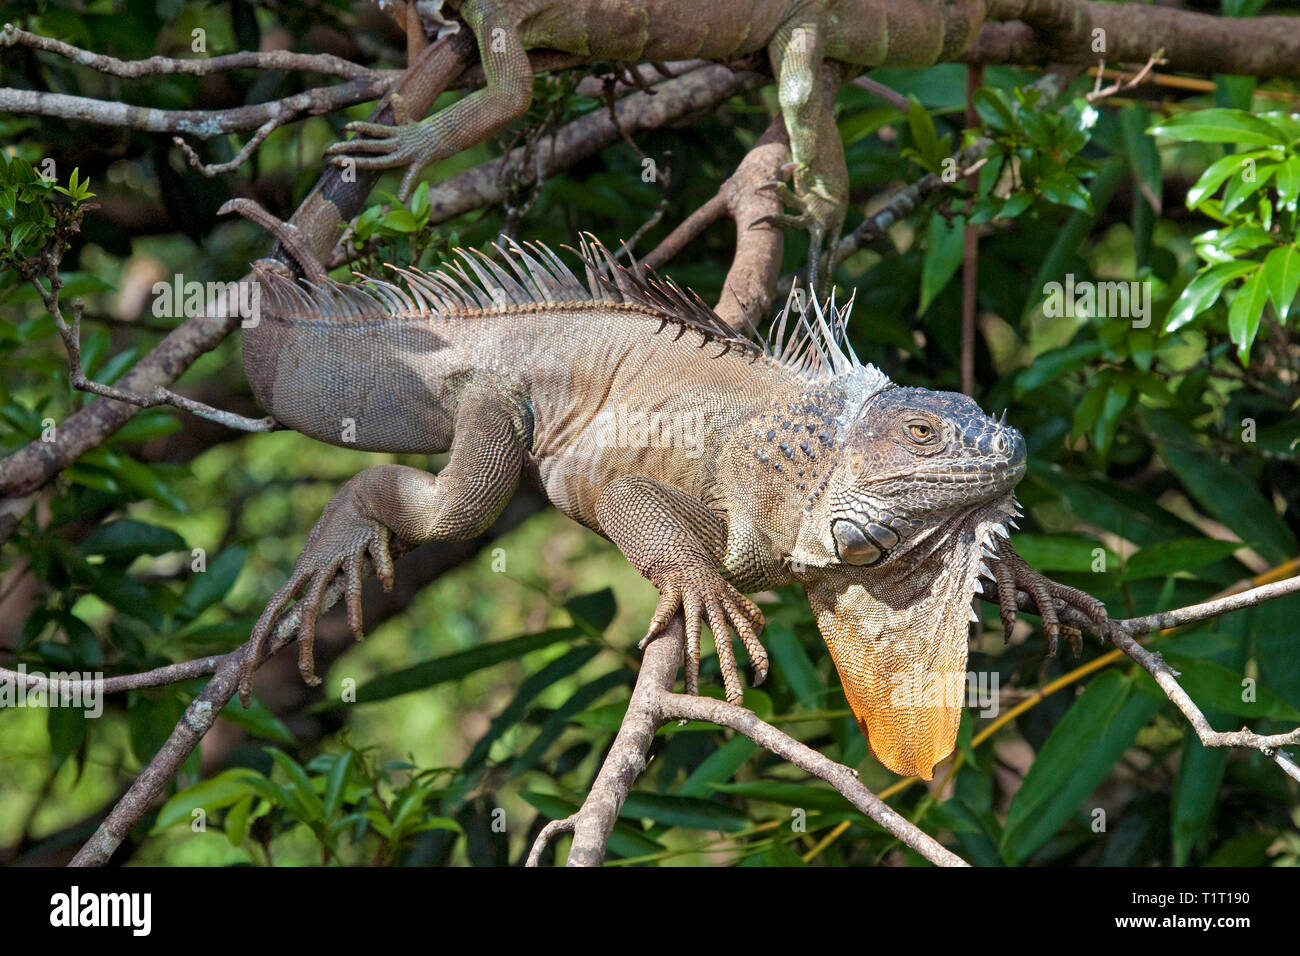 Grüner Leguan (Iguana iguana), auf einem Ast, Costa Rica | iguana verde (Iguana iguana), en una rama, Costa Rica Foto de stock